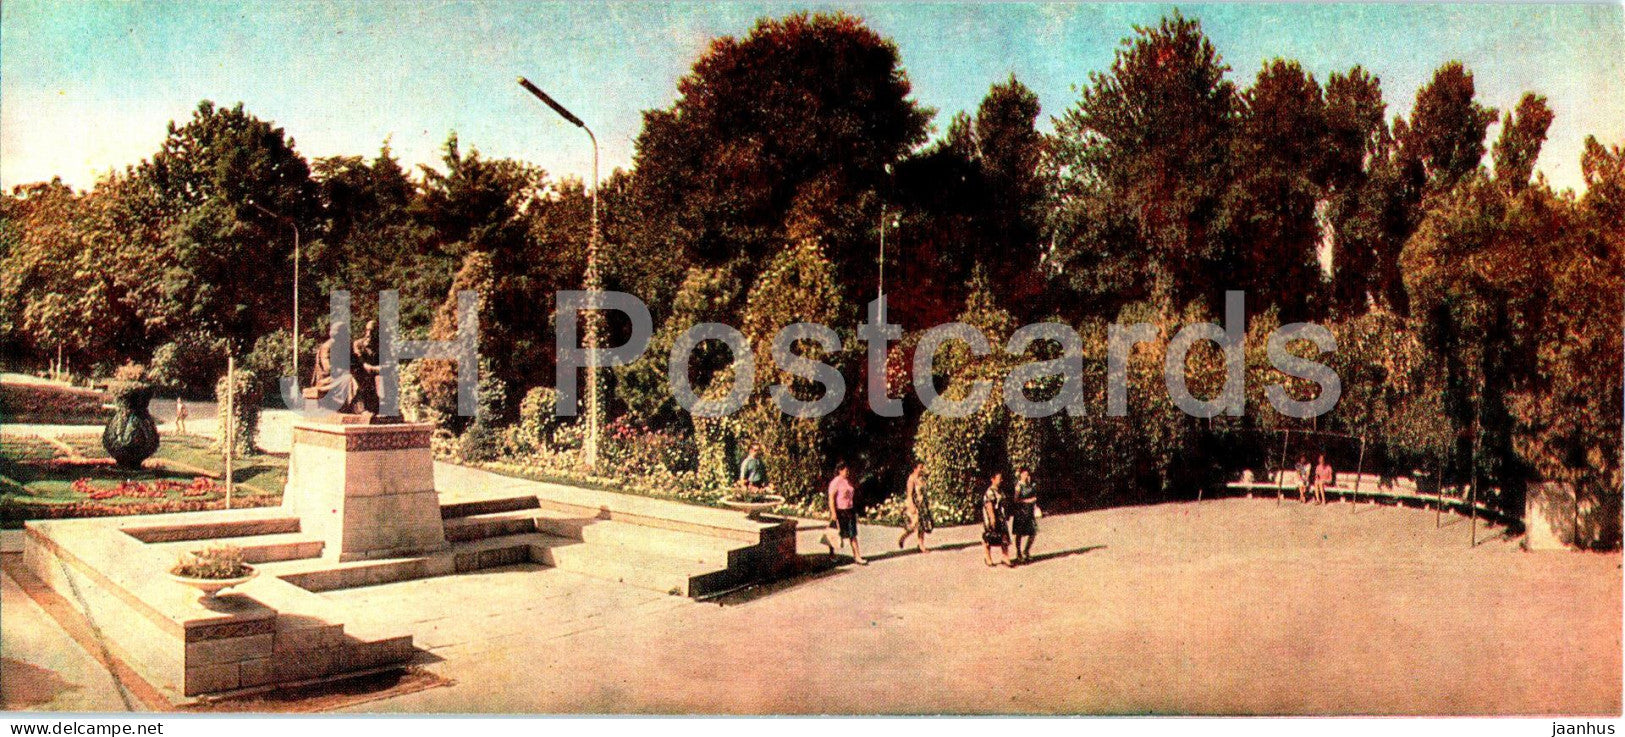 Bishkek - Frunze - Central Public Garden - 1969 - Kyrgyzstan USSR - unused - JH Postcards